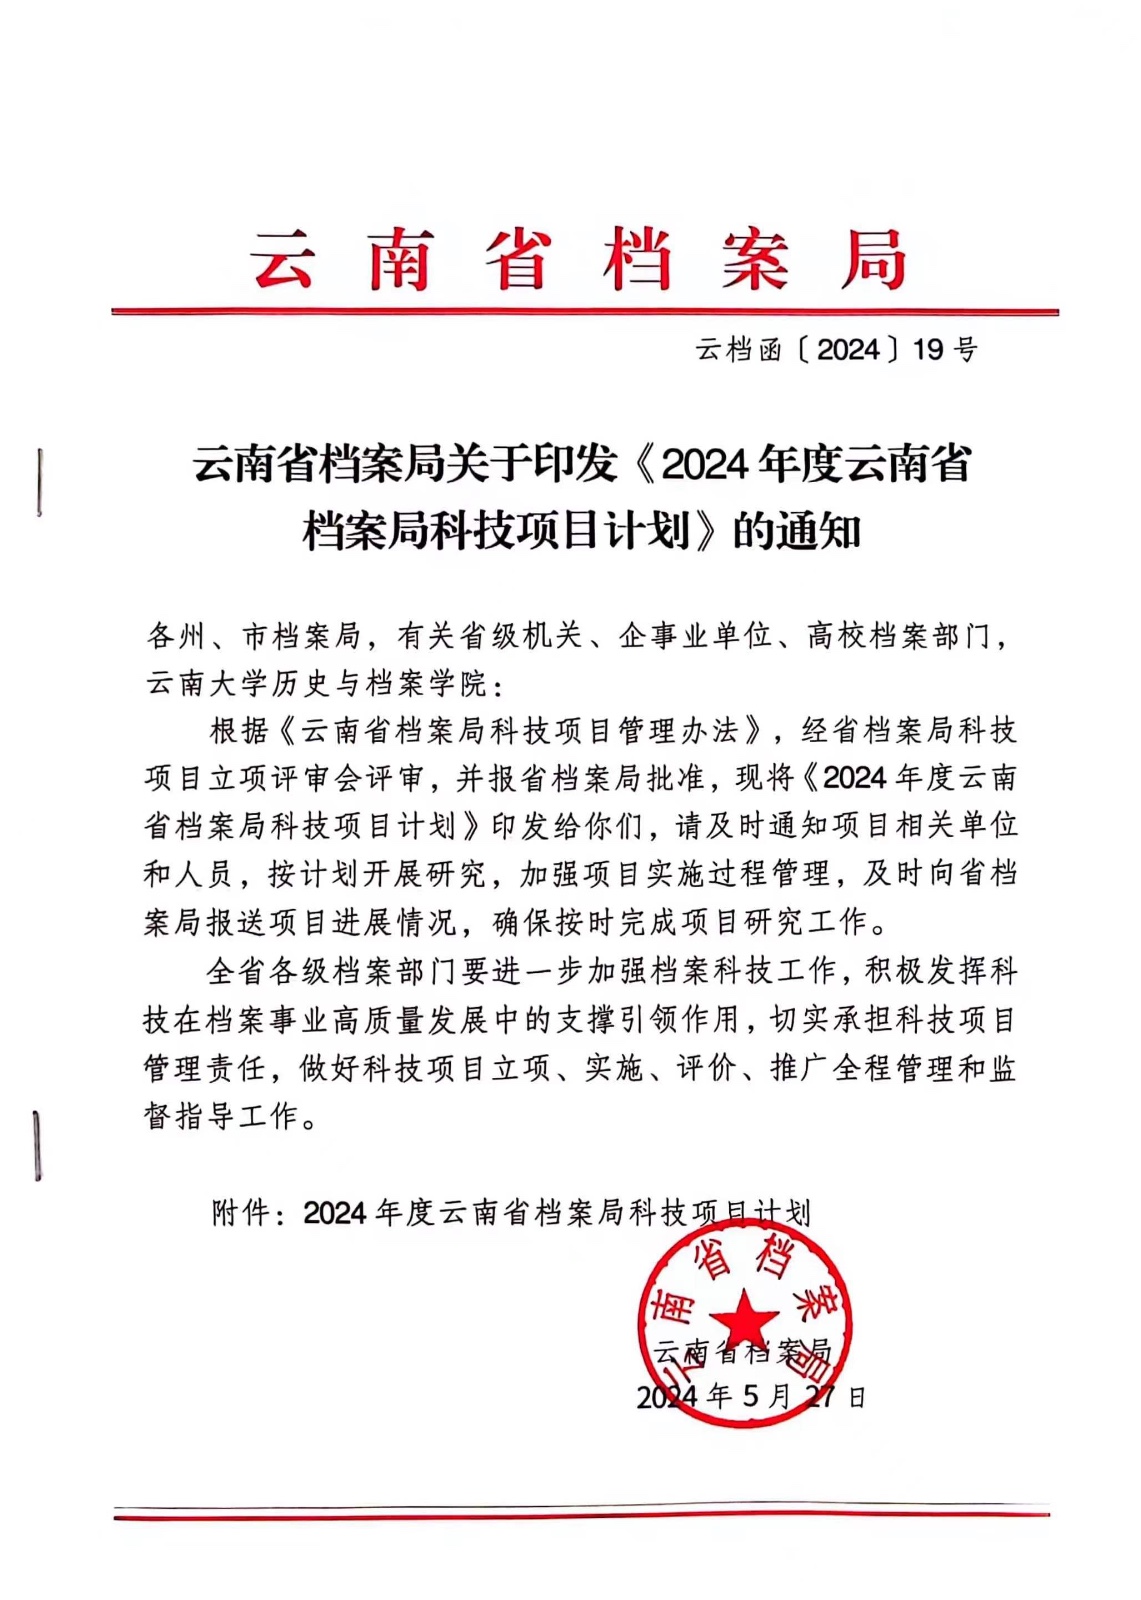 喜讯！我校获2024年度云南省档案局科技项目立项 第 1 张